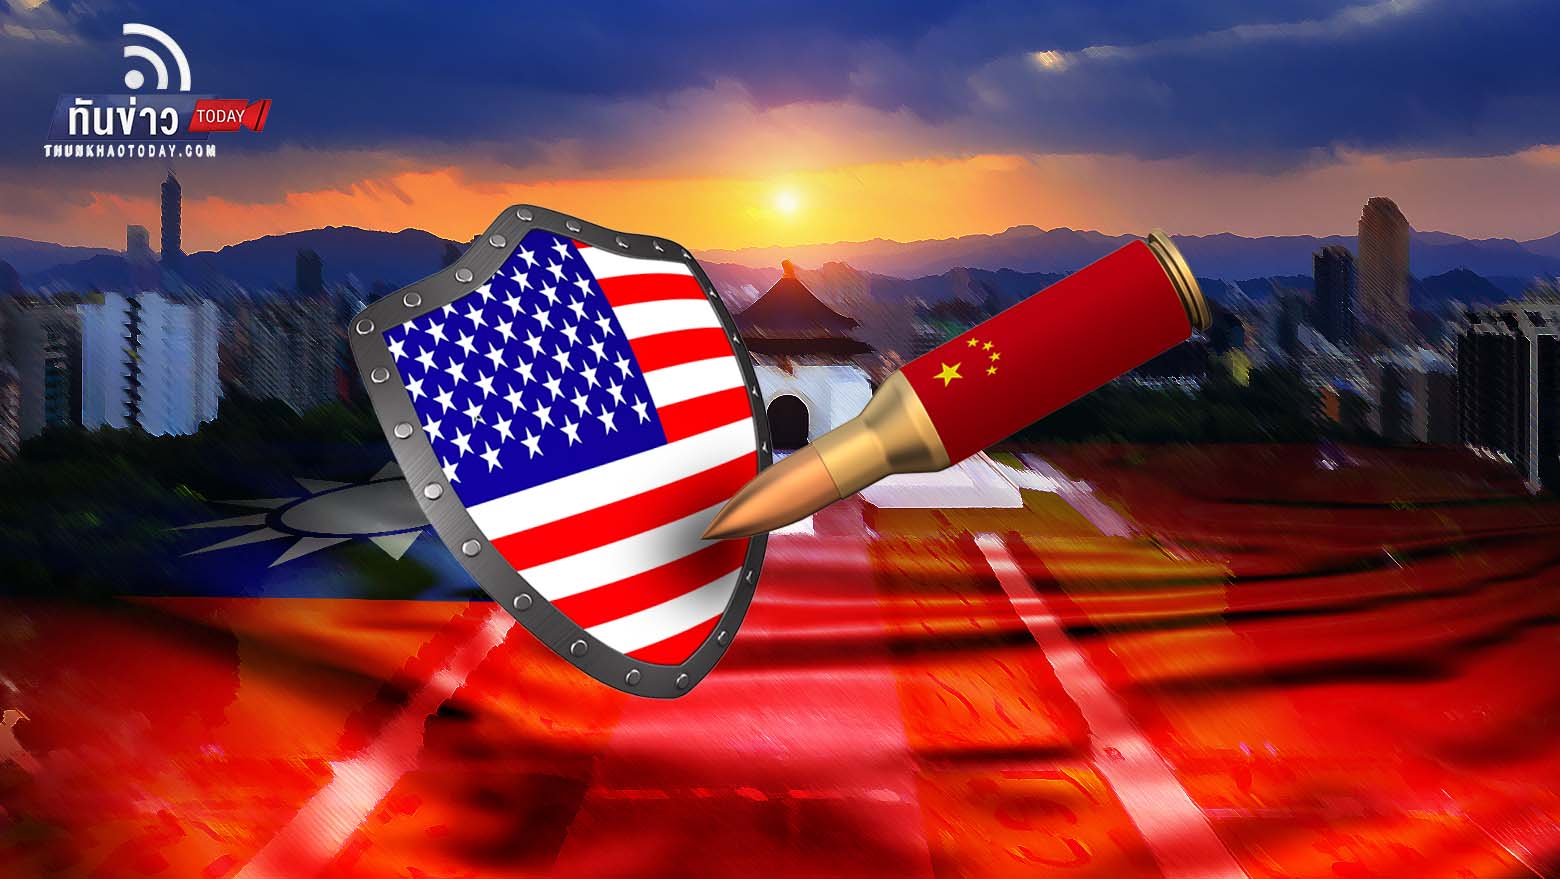 “สหรัฐฯ ขู่อาจใช้มาตรการคว่ำบาตรจีนหากรุกรานไต้หวัน เหมือนกับที่รัสเซียรุกรานยูเครน